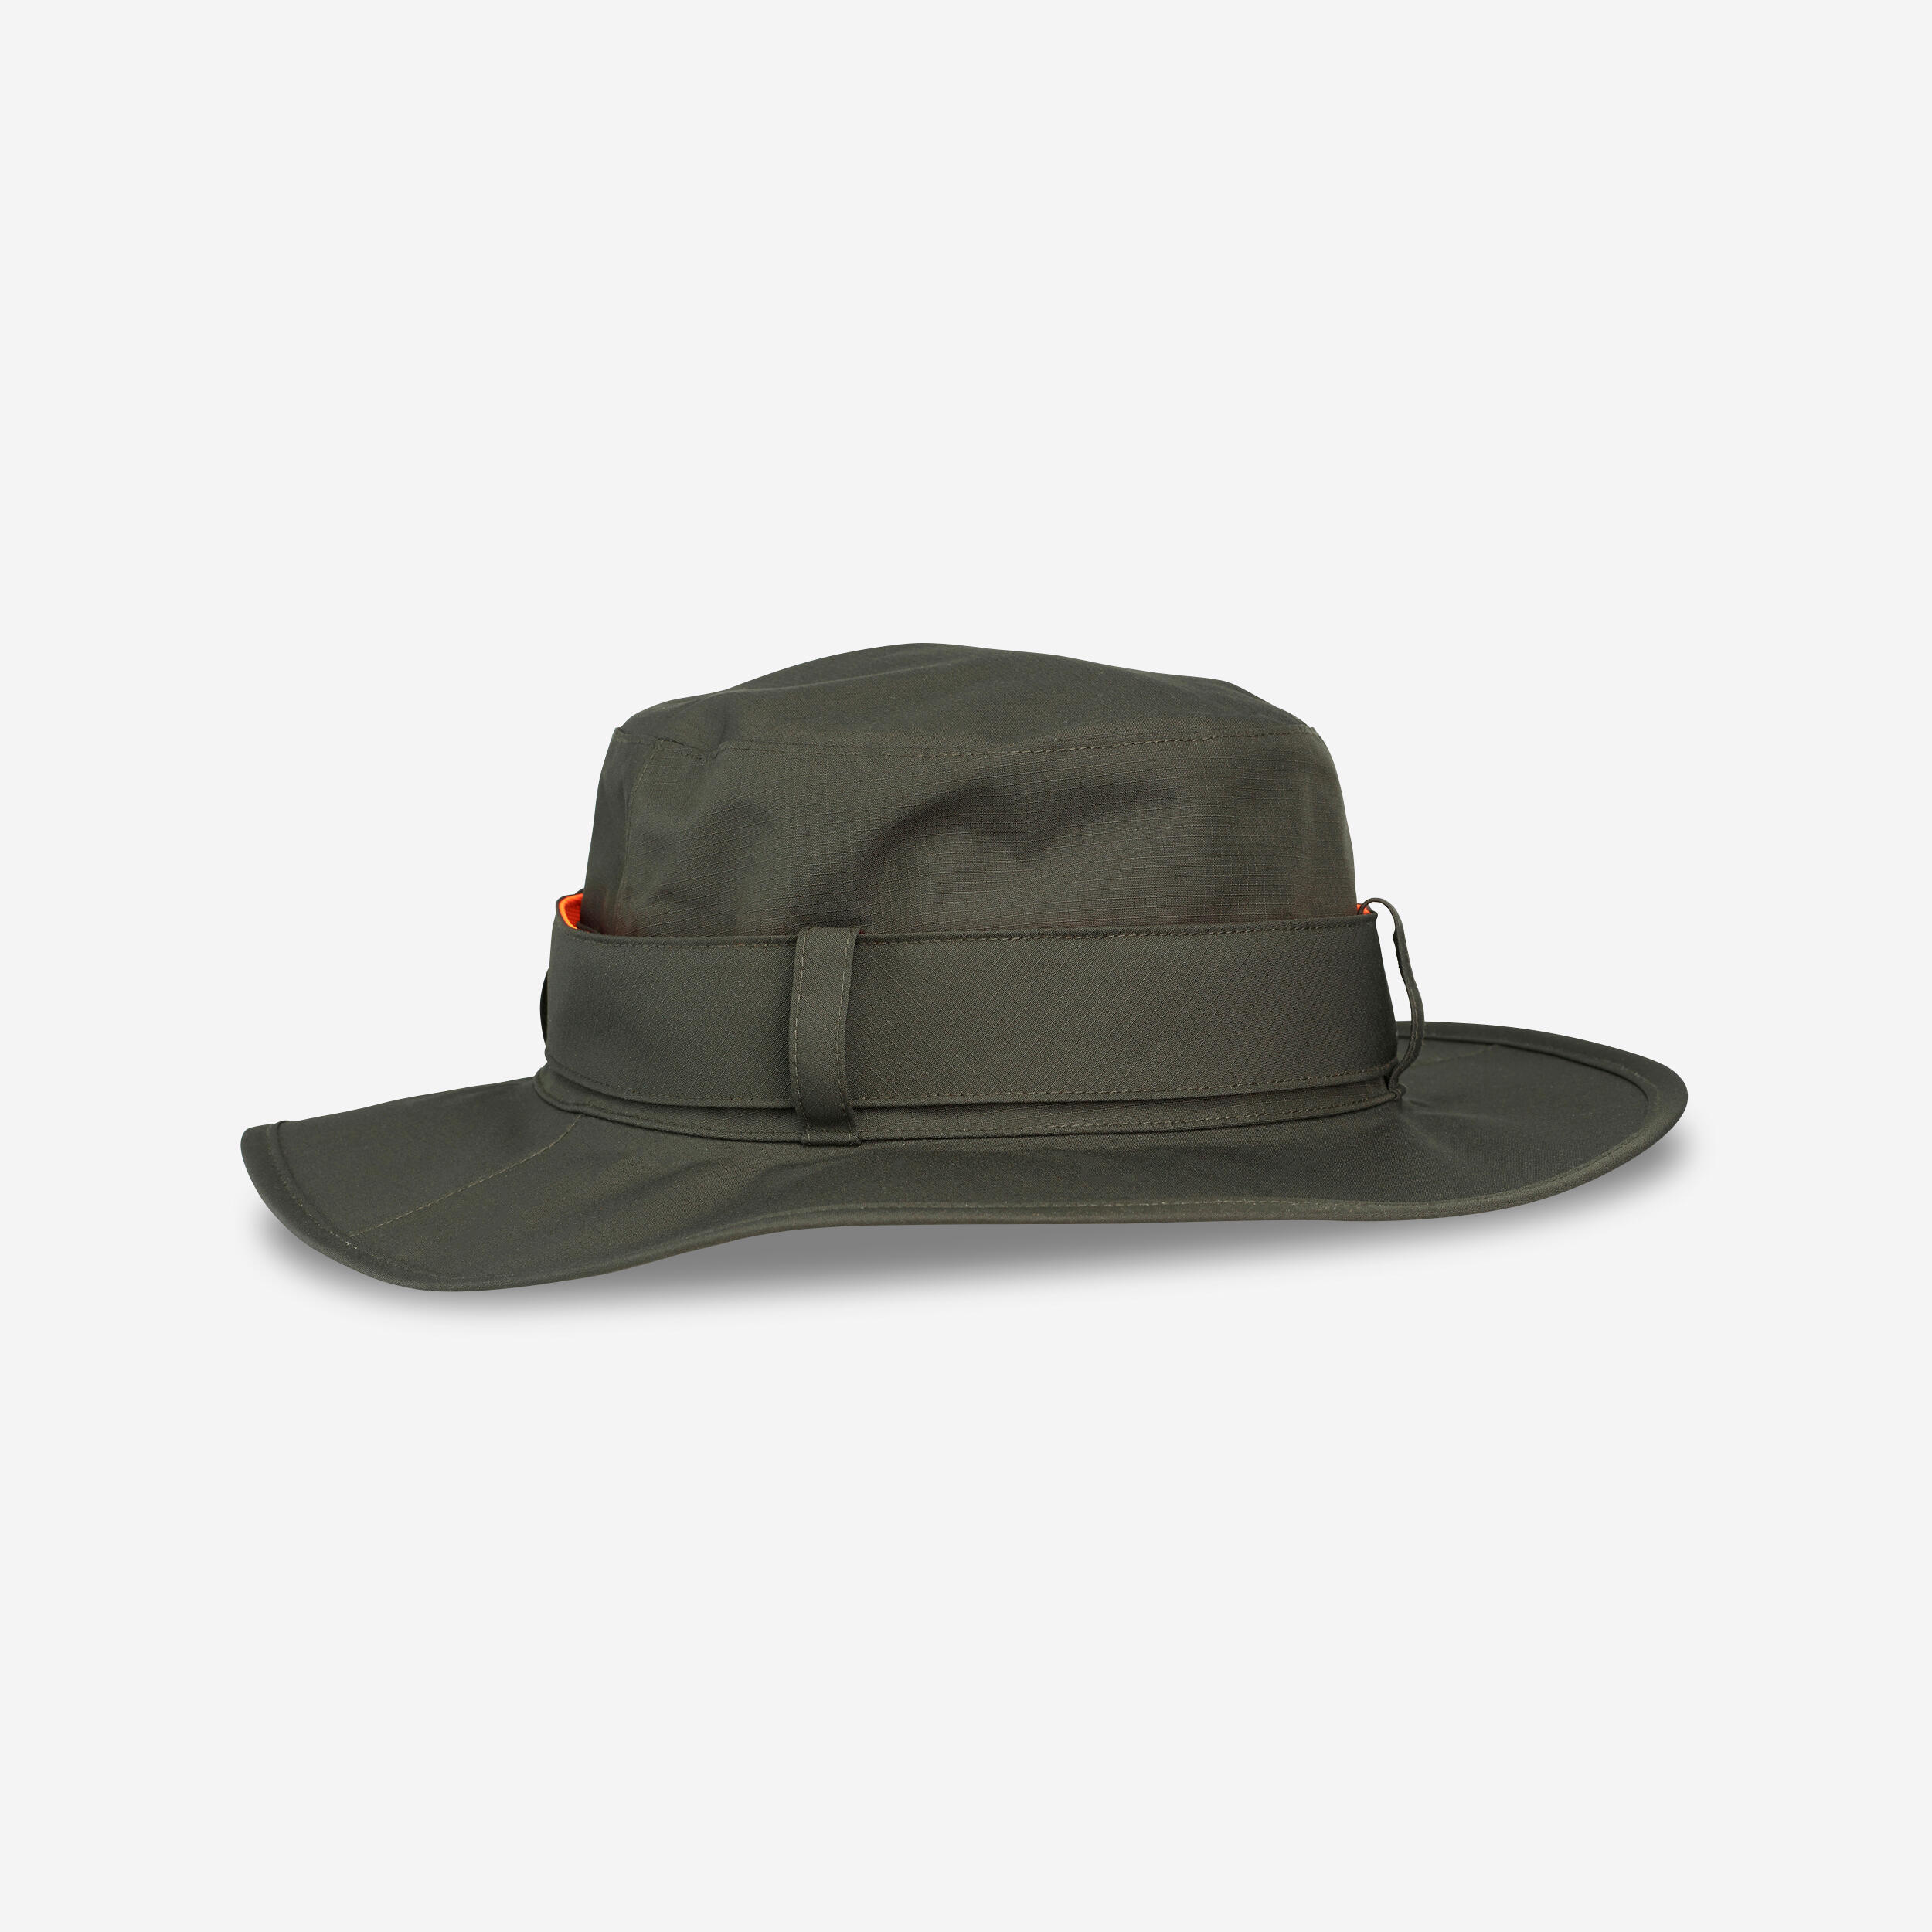 Pălărie SG520 impermeabilă și rezistentă verde bărbați Bărbaţi imagine 2022